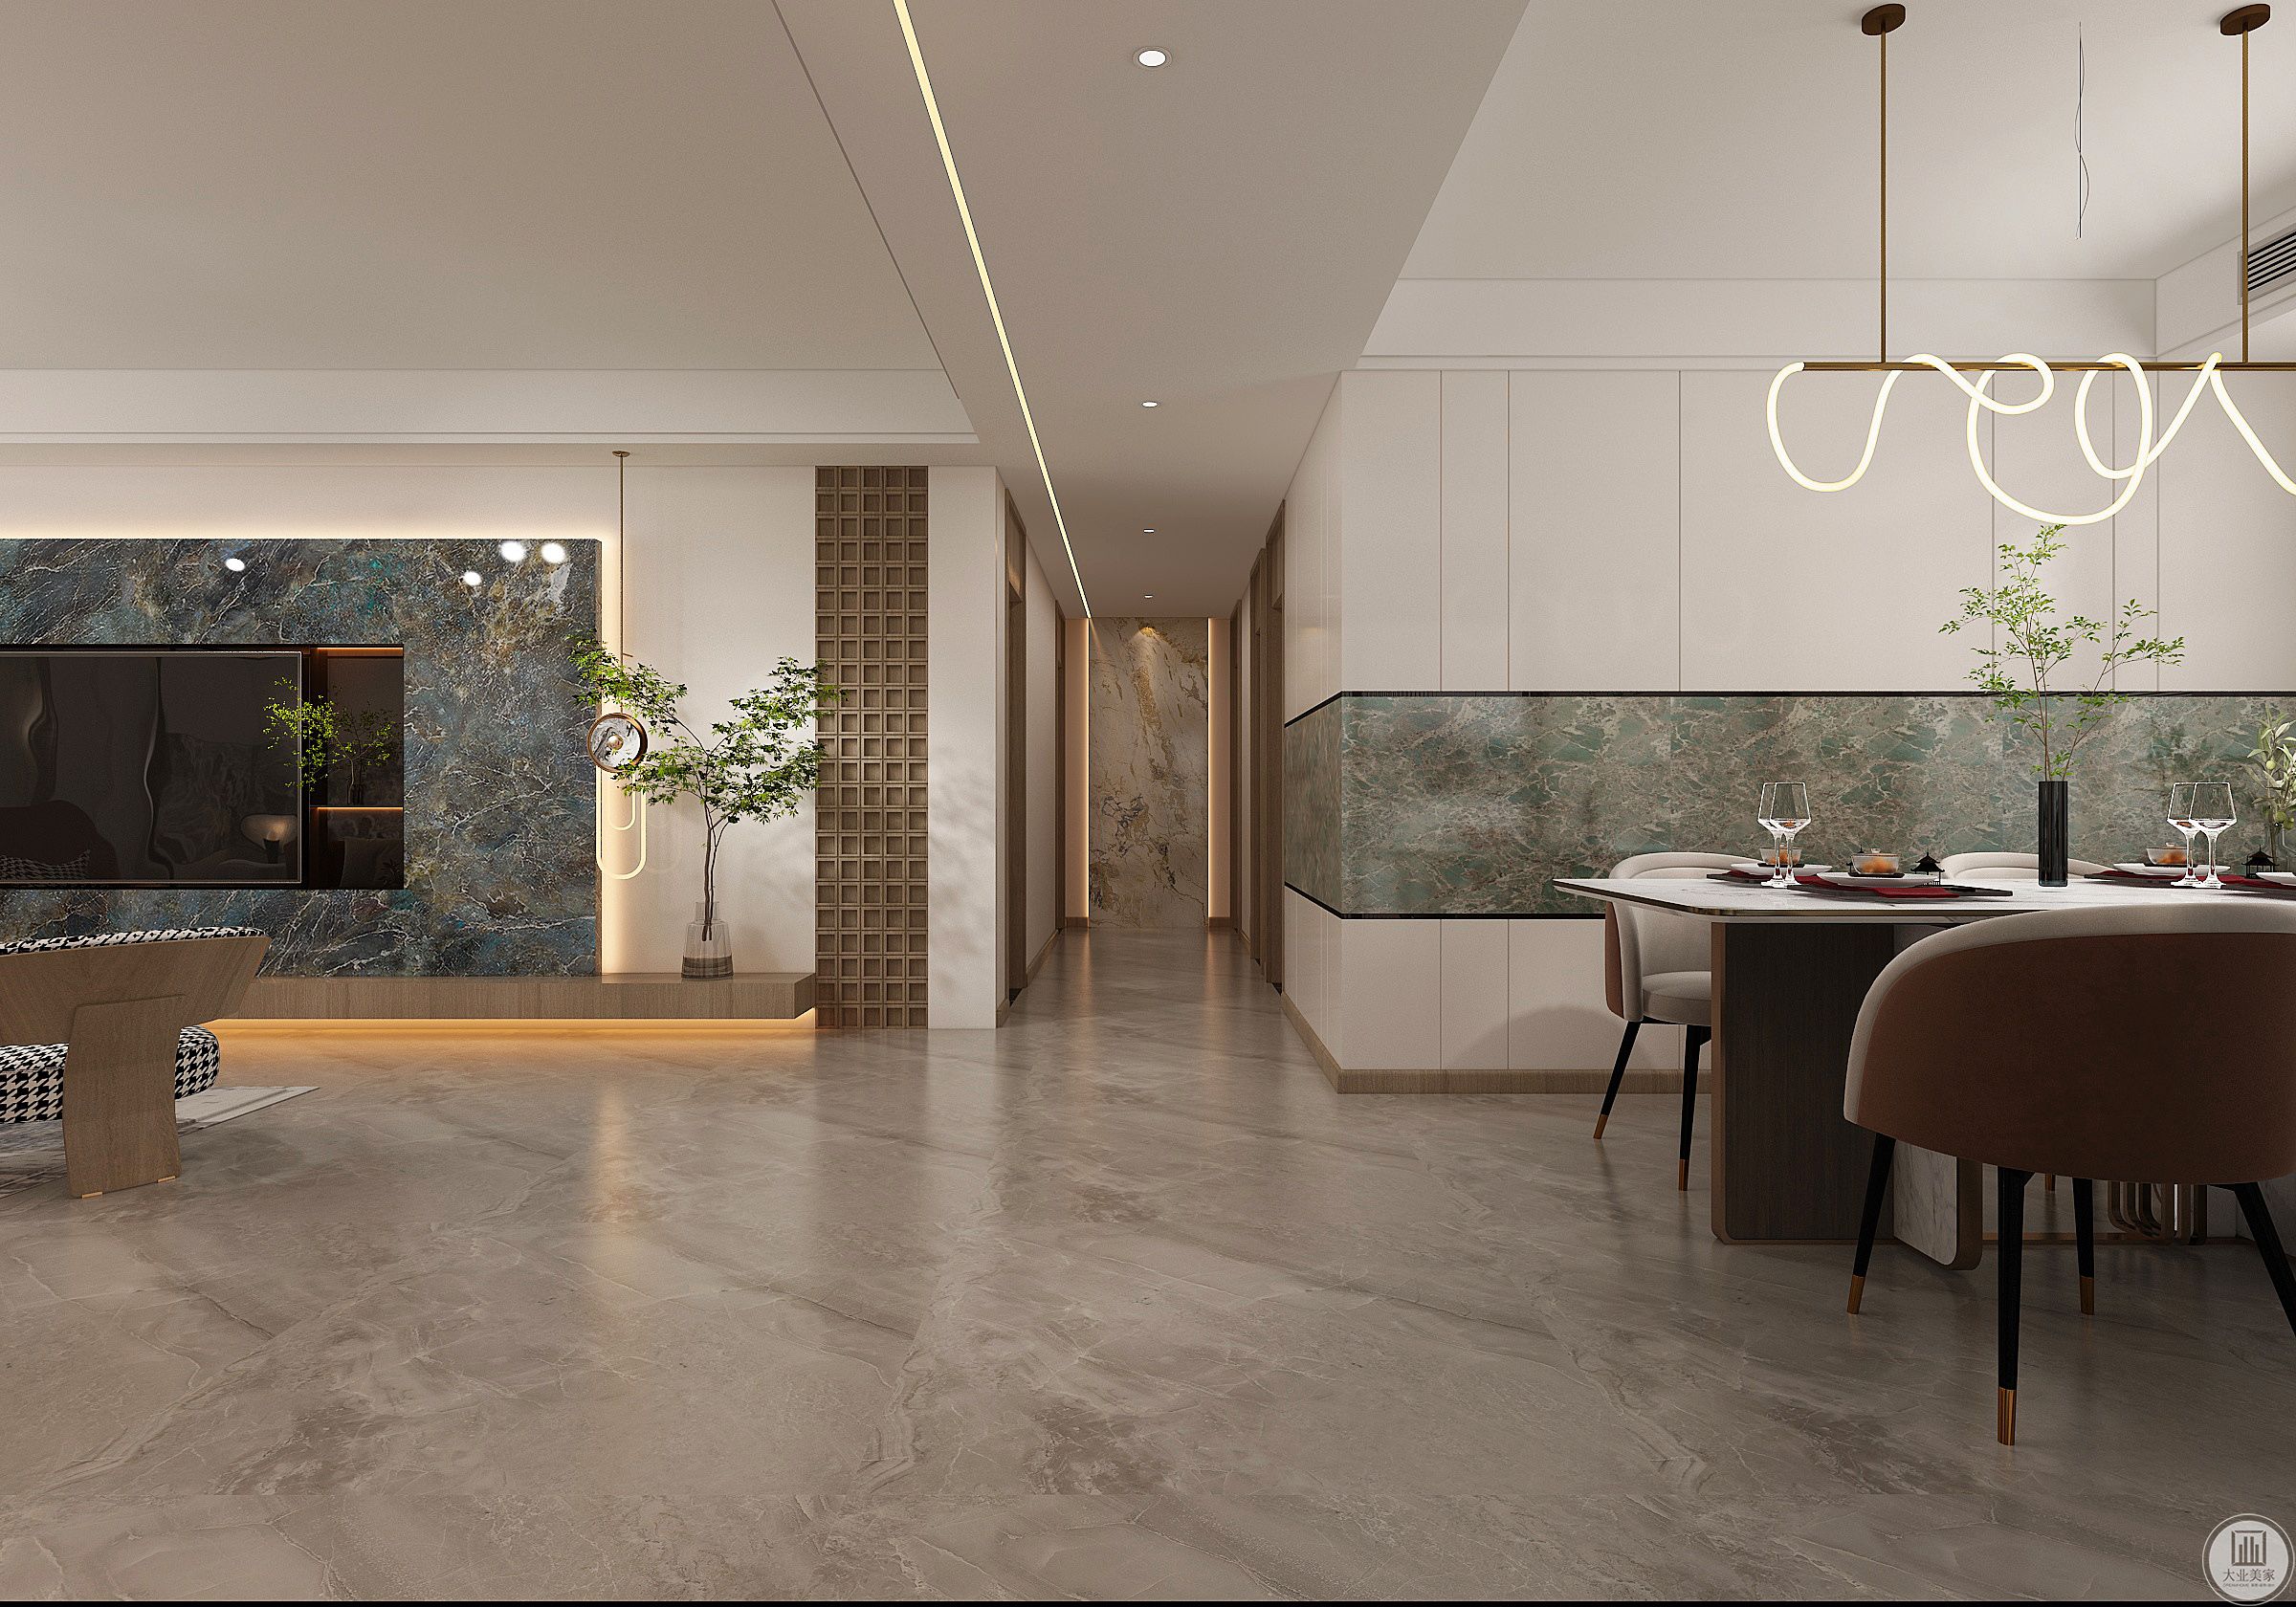 整个空间挂画、金属、石材、皮革、布艺、绿植混合在一起，佛罗伦萨最独特的气质融于空间，赋予经典与永恒之美。为客厅空间营造出大气、蓬勃的氛围